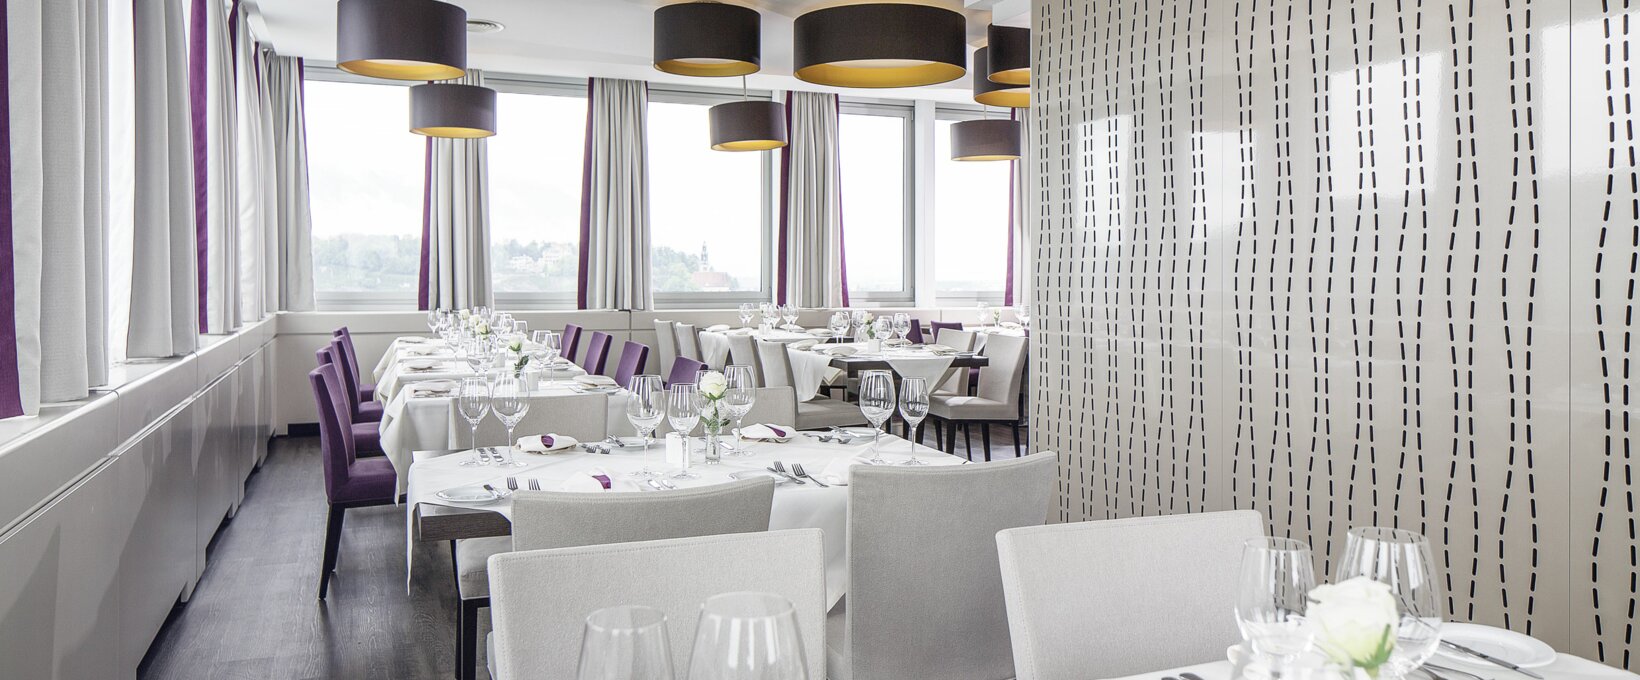 Restaurant mit gedeckten Tischen | Hotel Europa Salzburg